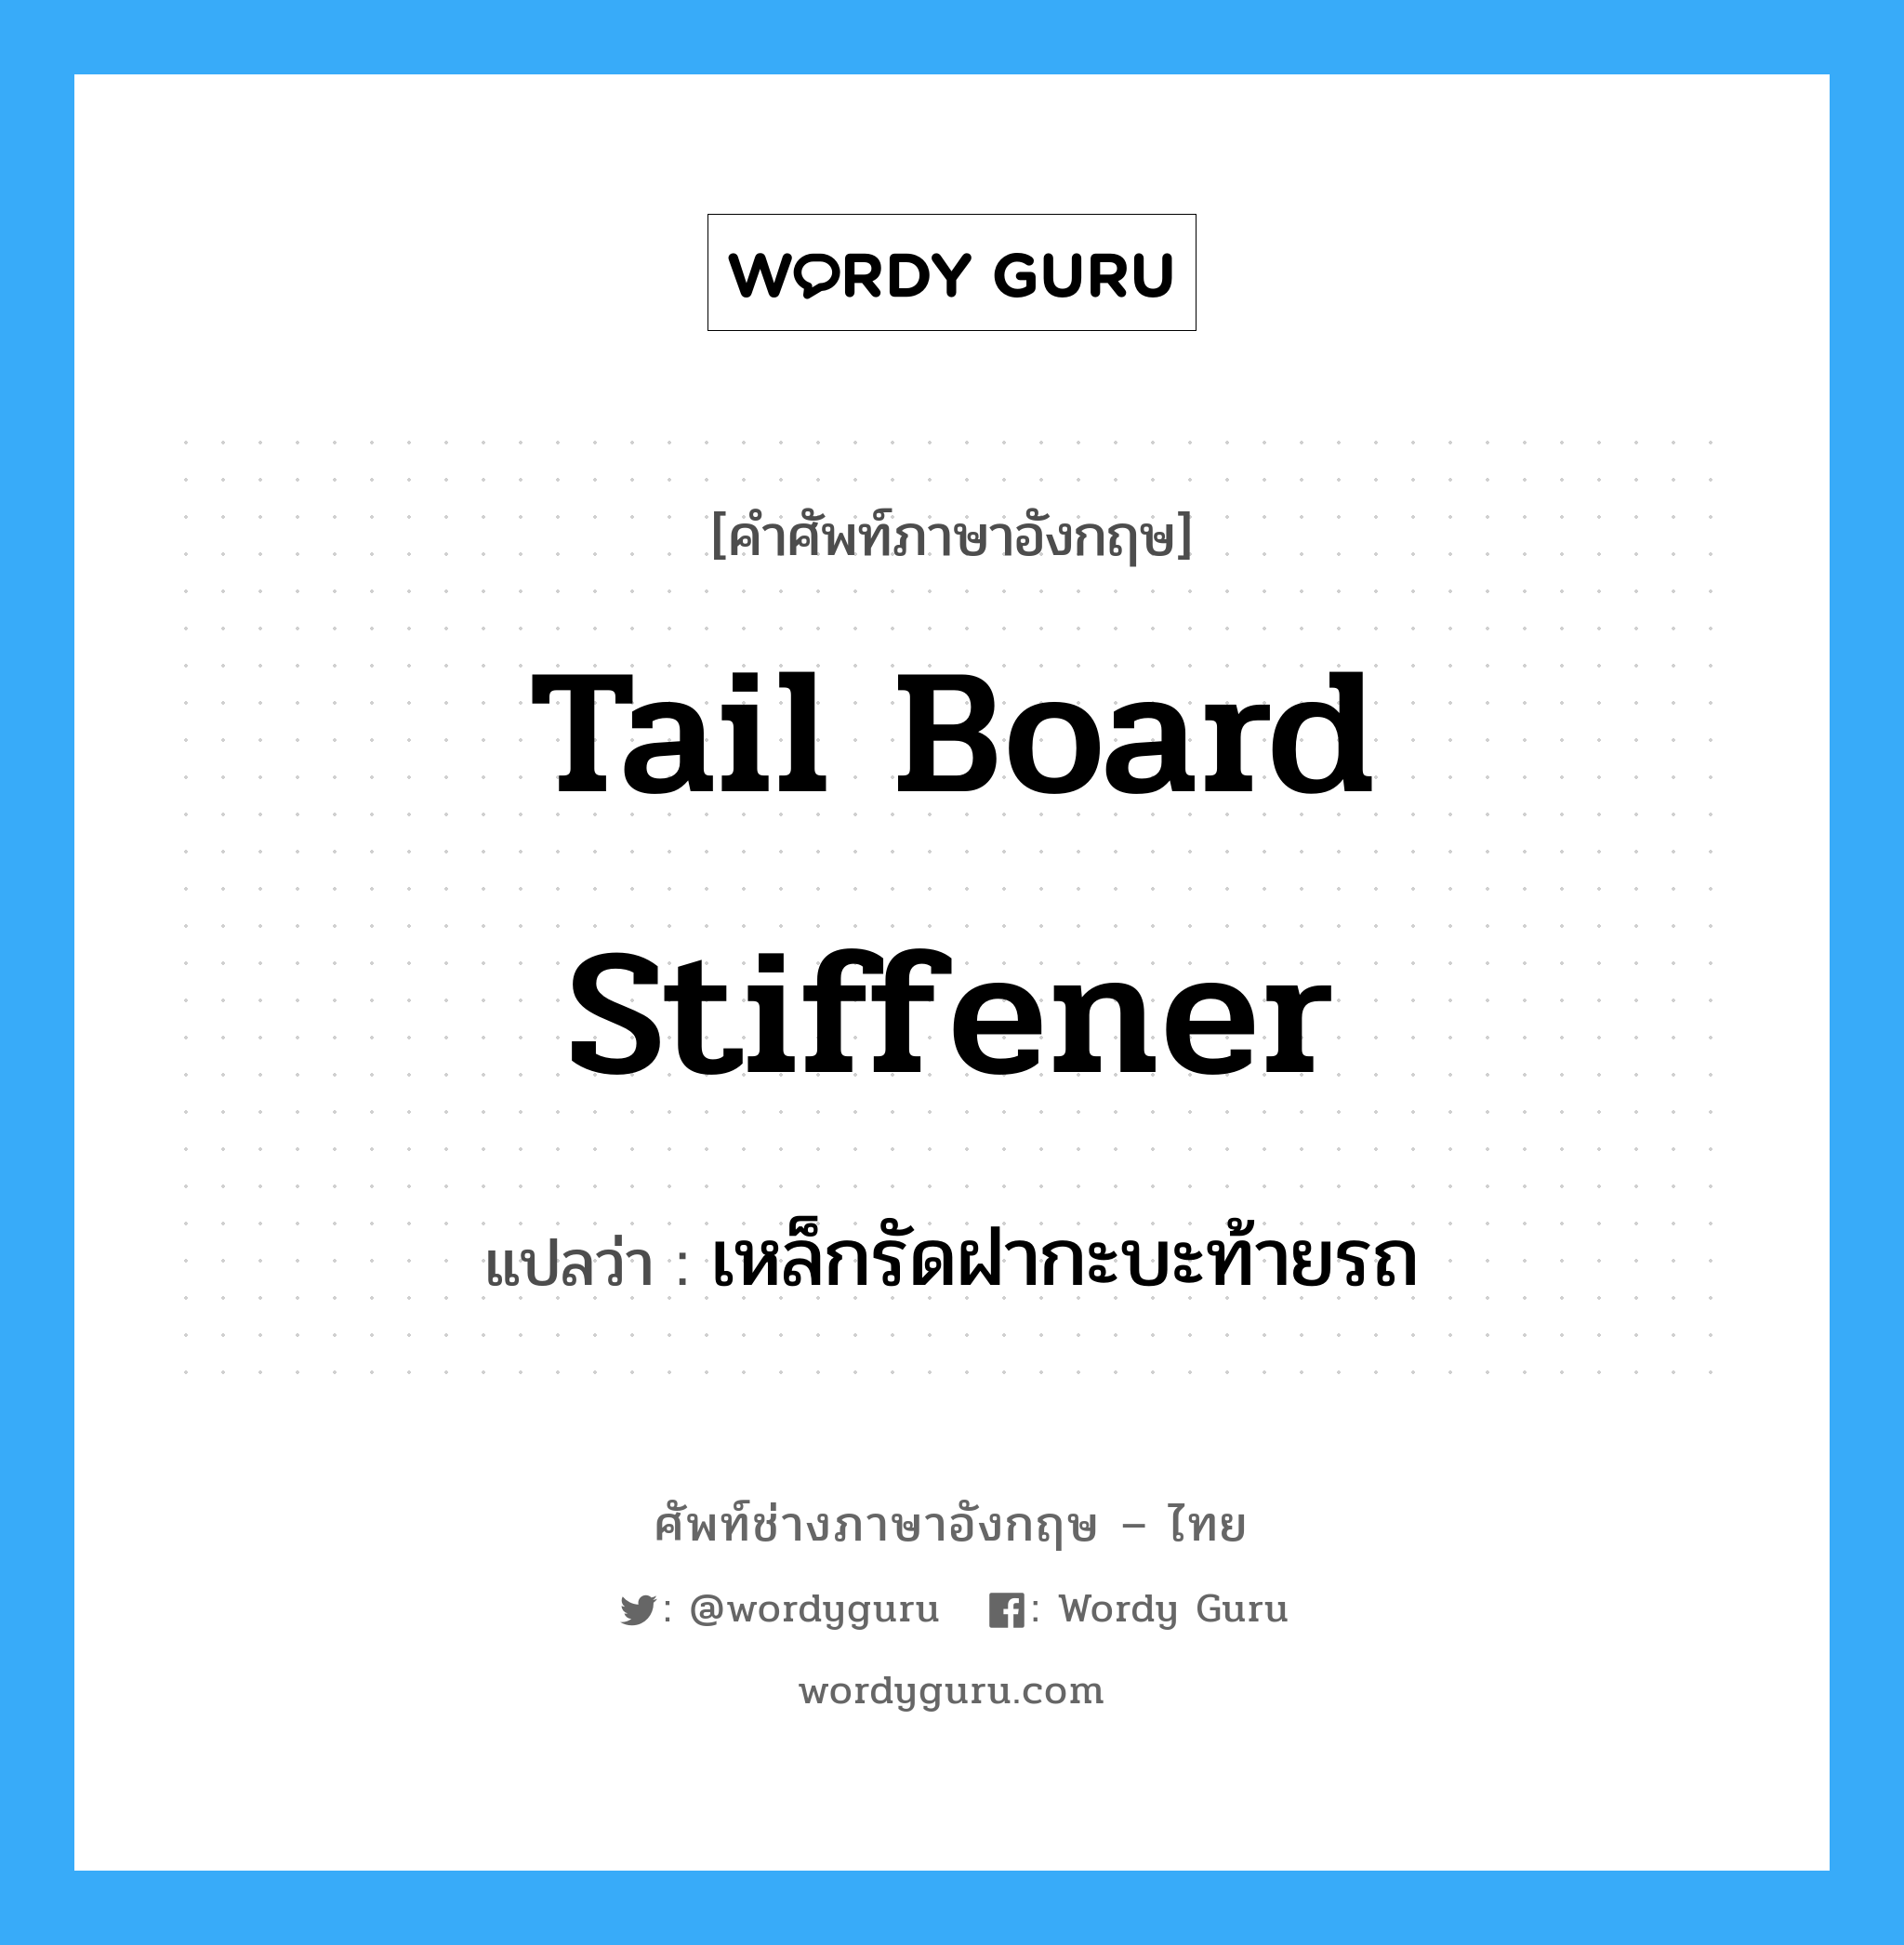 tail board stiffener แปลว่า?, คำศัพท์ช่างภาษาอังกฤษ - ไทย tail board stiffener คำศัพท์ภาษาอังกฤษ tail board stiffener แปลว่า เหล็กรัดฝากะบะท้ายรถ